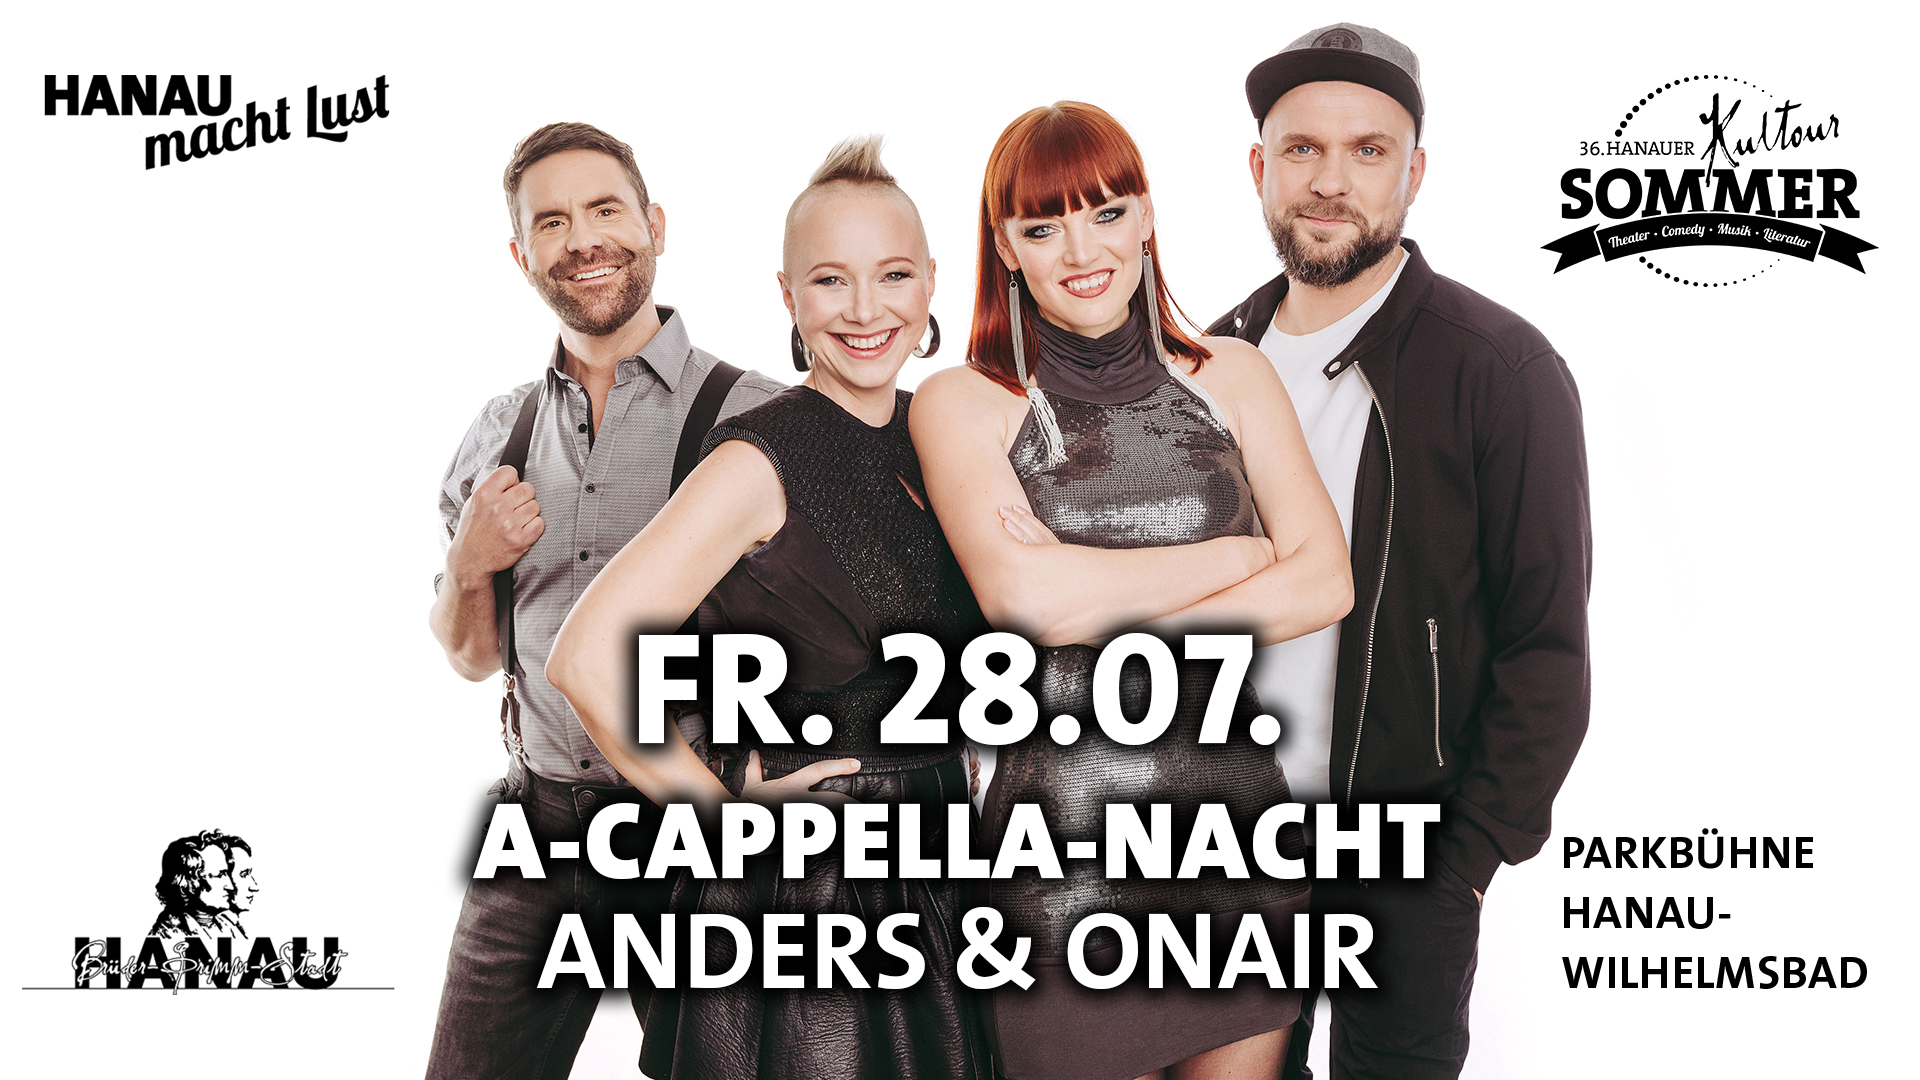 A-cappella-nacht Fb